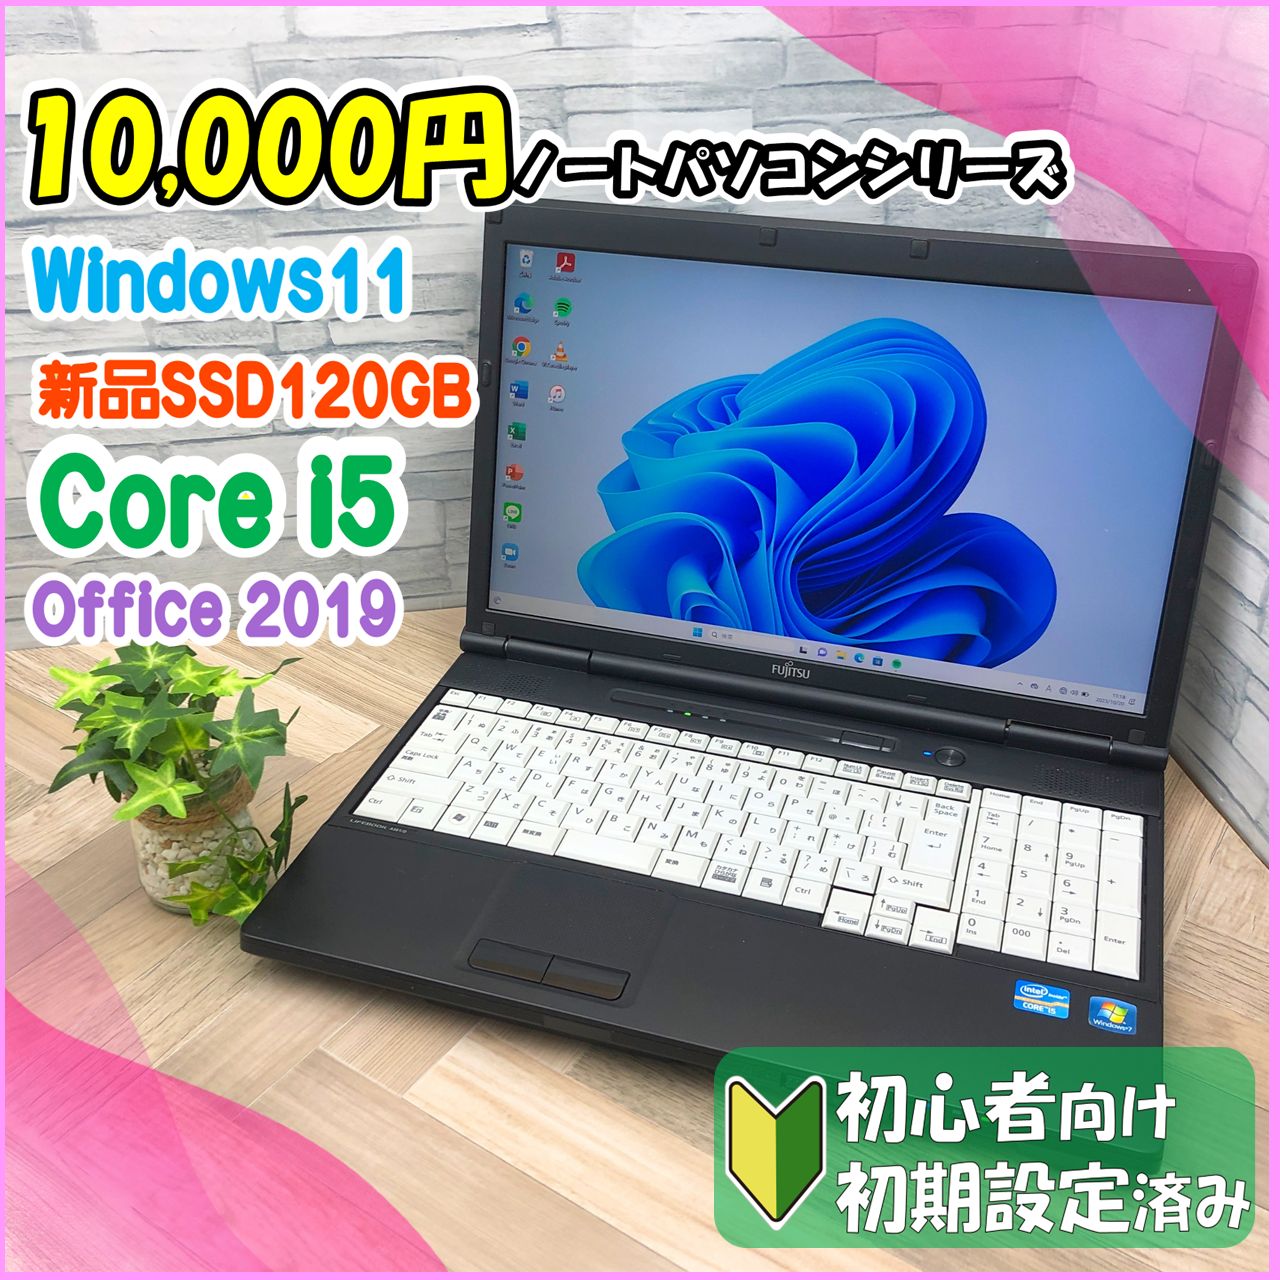 富士通LIFEBOOK A561/D corei5(win7)win10アップデート済 - ノートパソコン